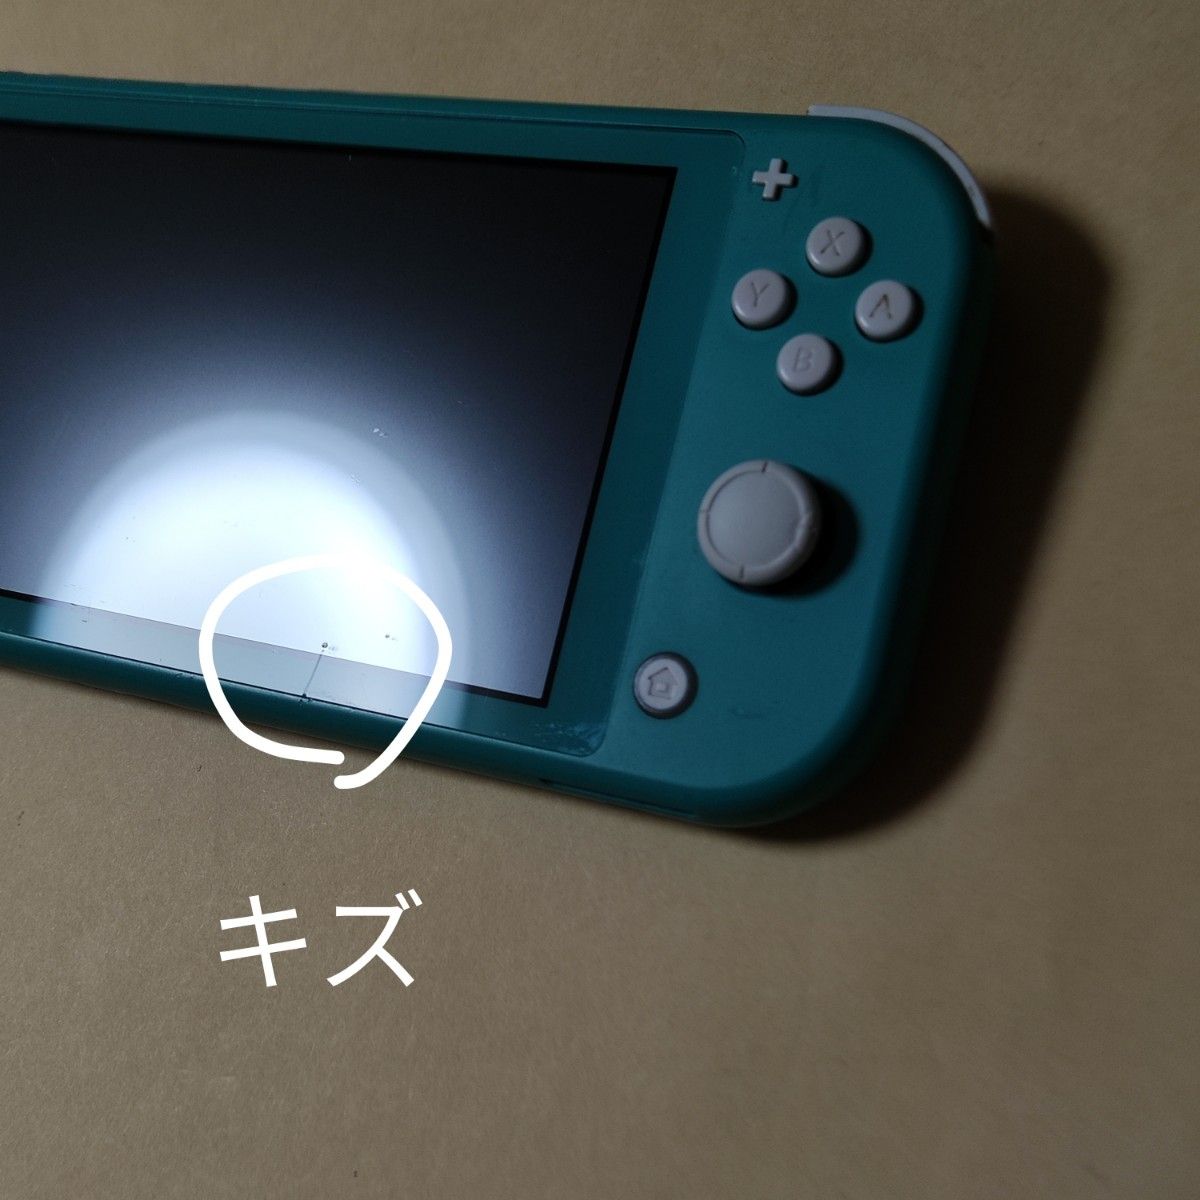 ジャンク品 左右スティック動作不良・外装難あり Nintendo Switch Lite ターコイズ 本体のみ 2019年製